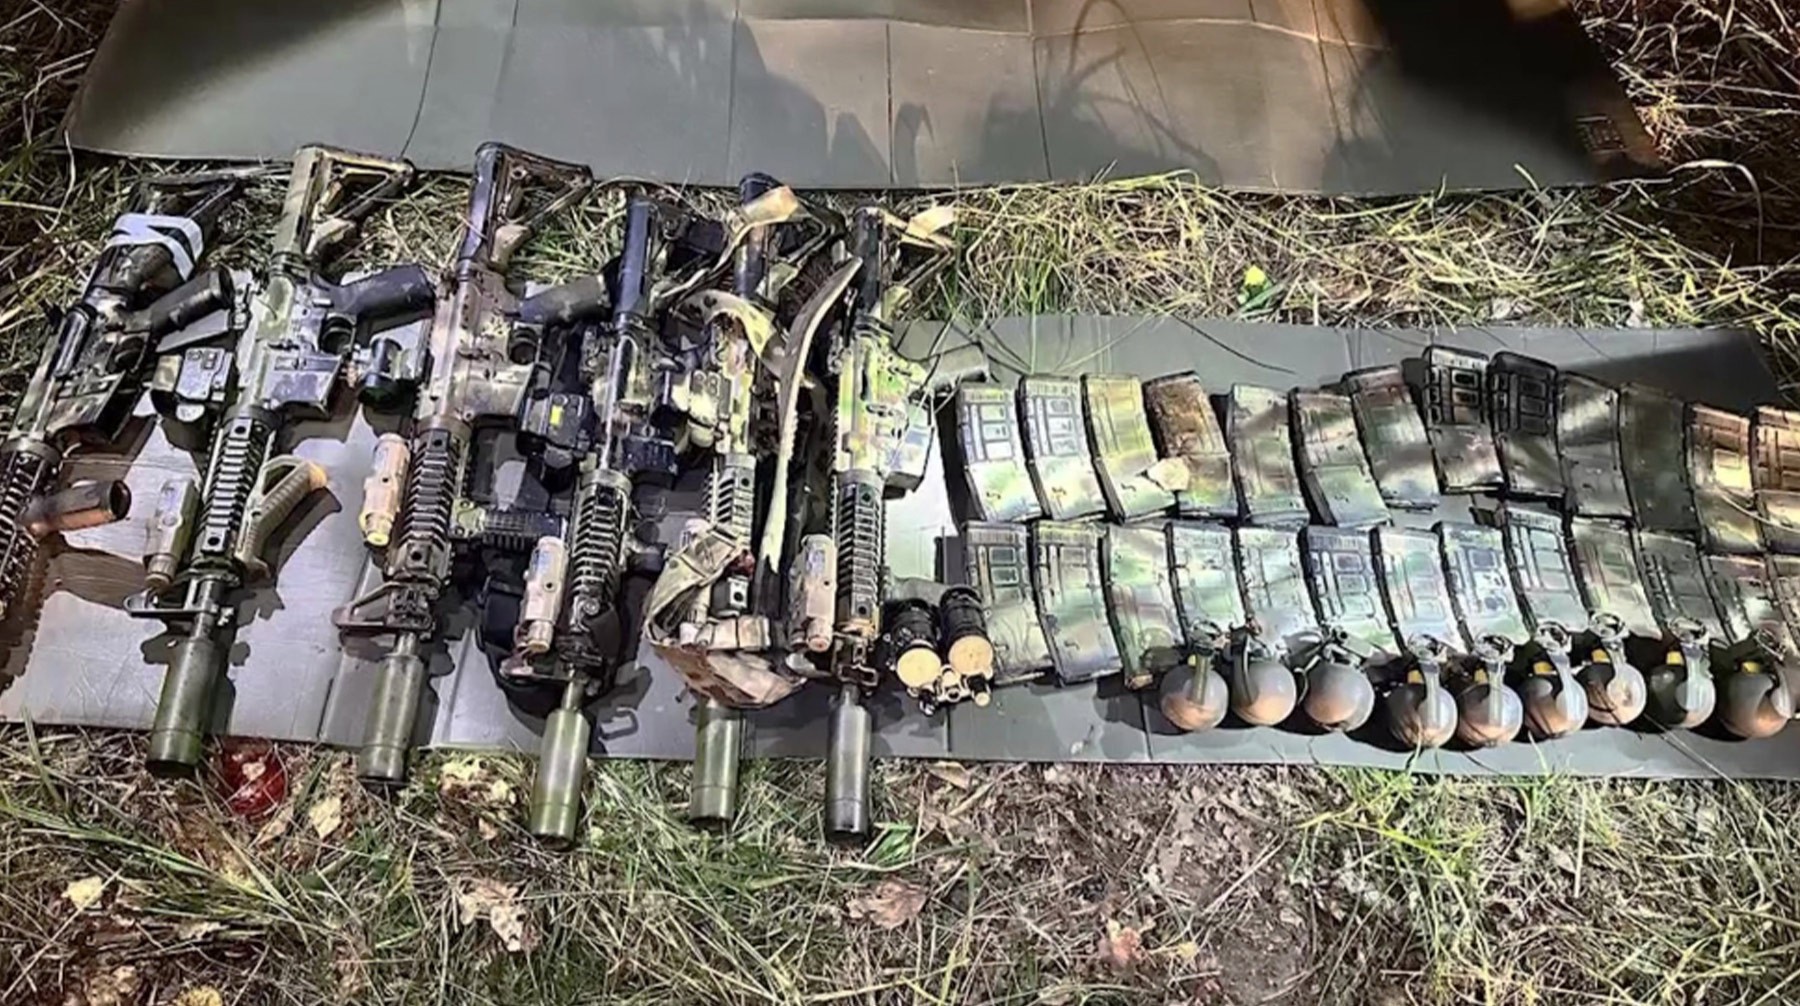 Оружие, изъятое сотрудниками ФСБ РФ у диверсионно-террористической группы, в Навельском районе Брянской области